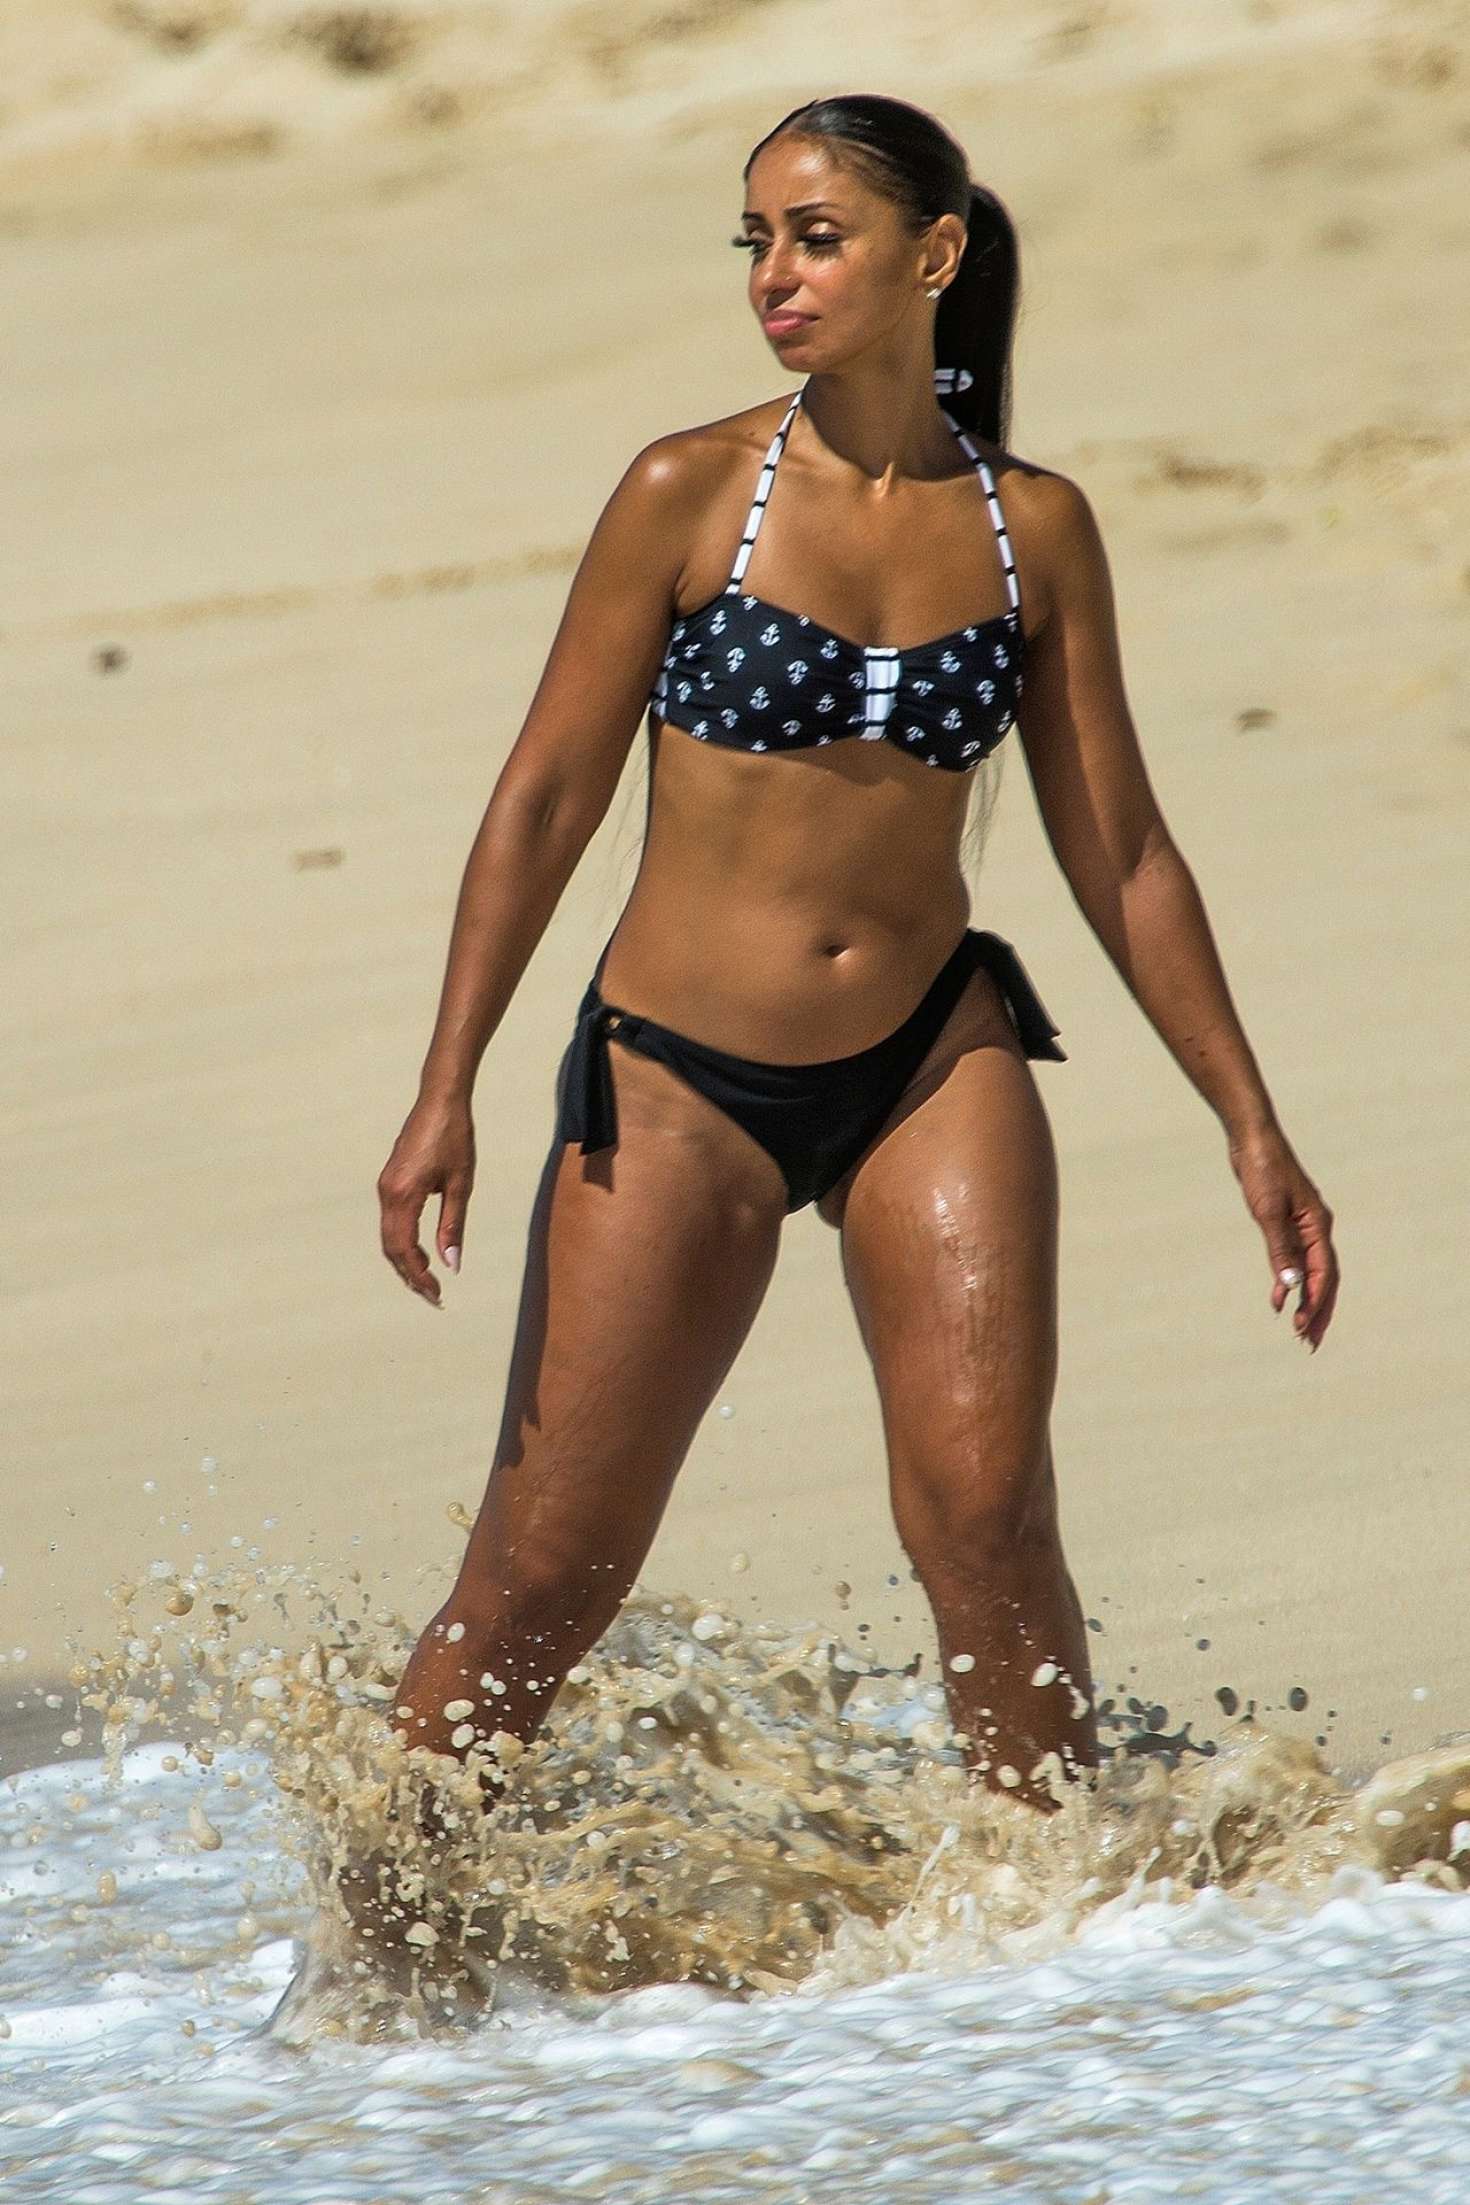 Mya Harrison in Bikini on the beach in Barbados.